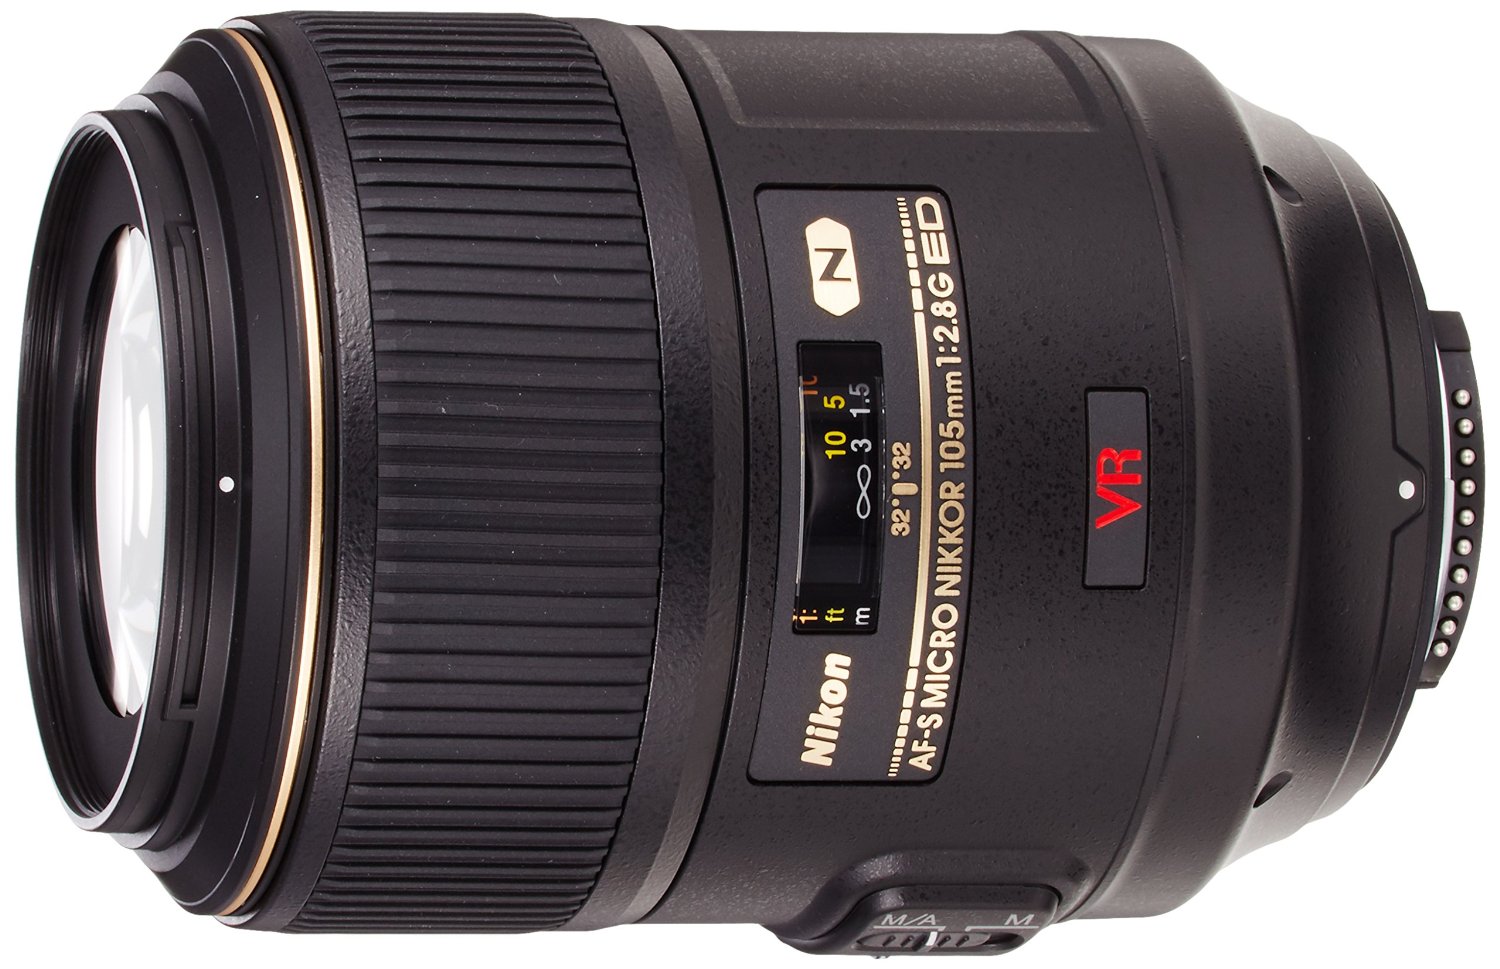 Nikon 105mm f2.8 G AF-S VR IF ED Micro Nikkor Lens